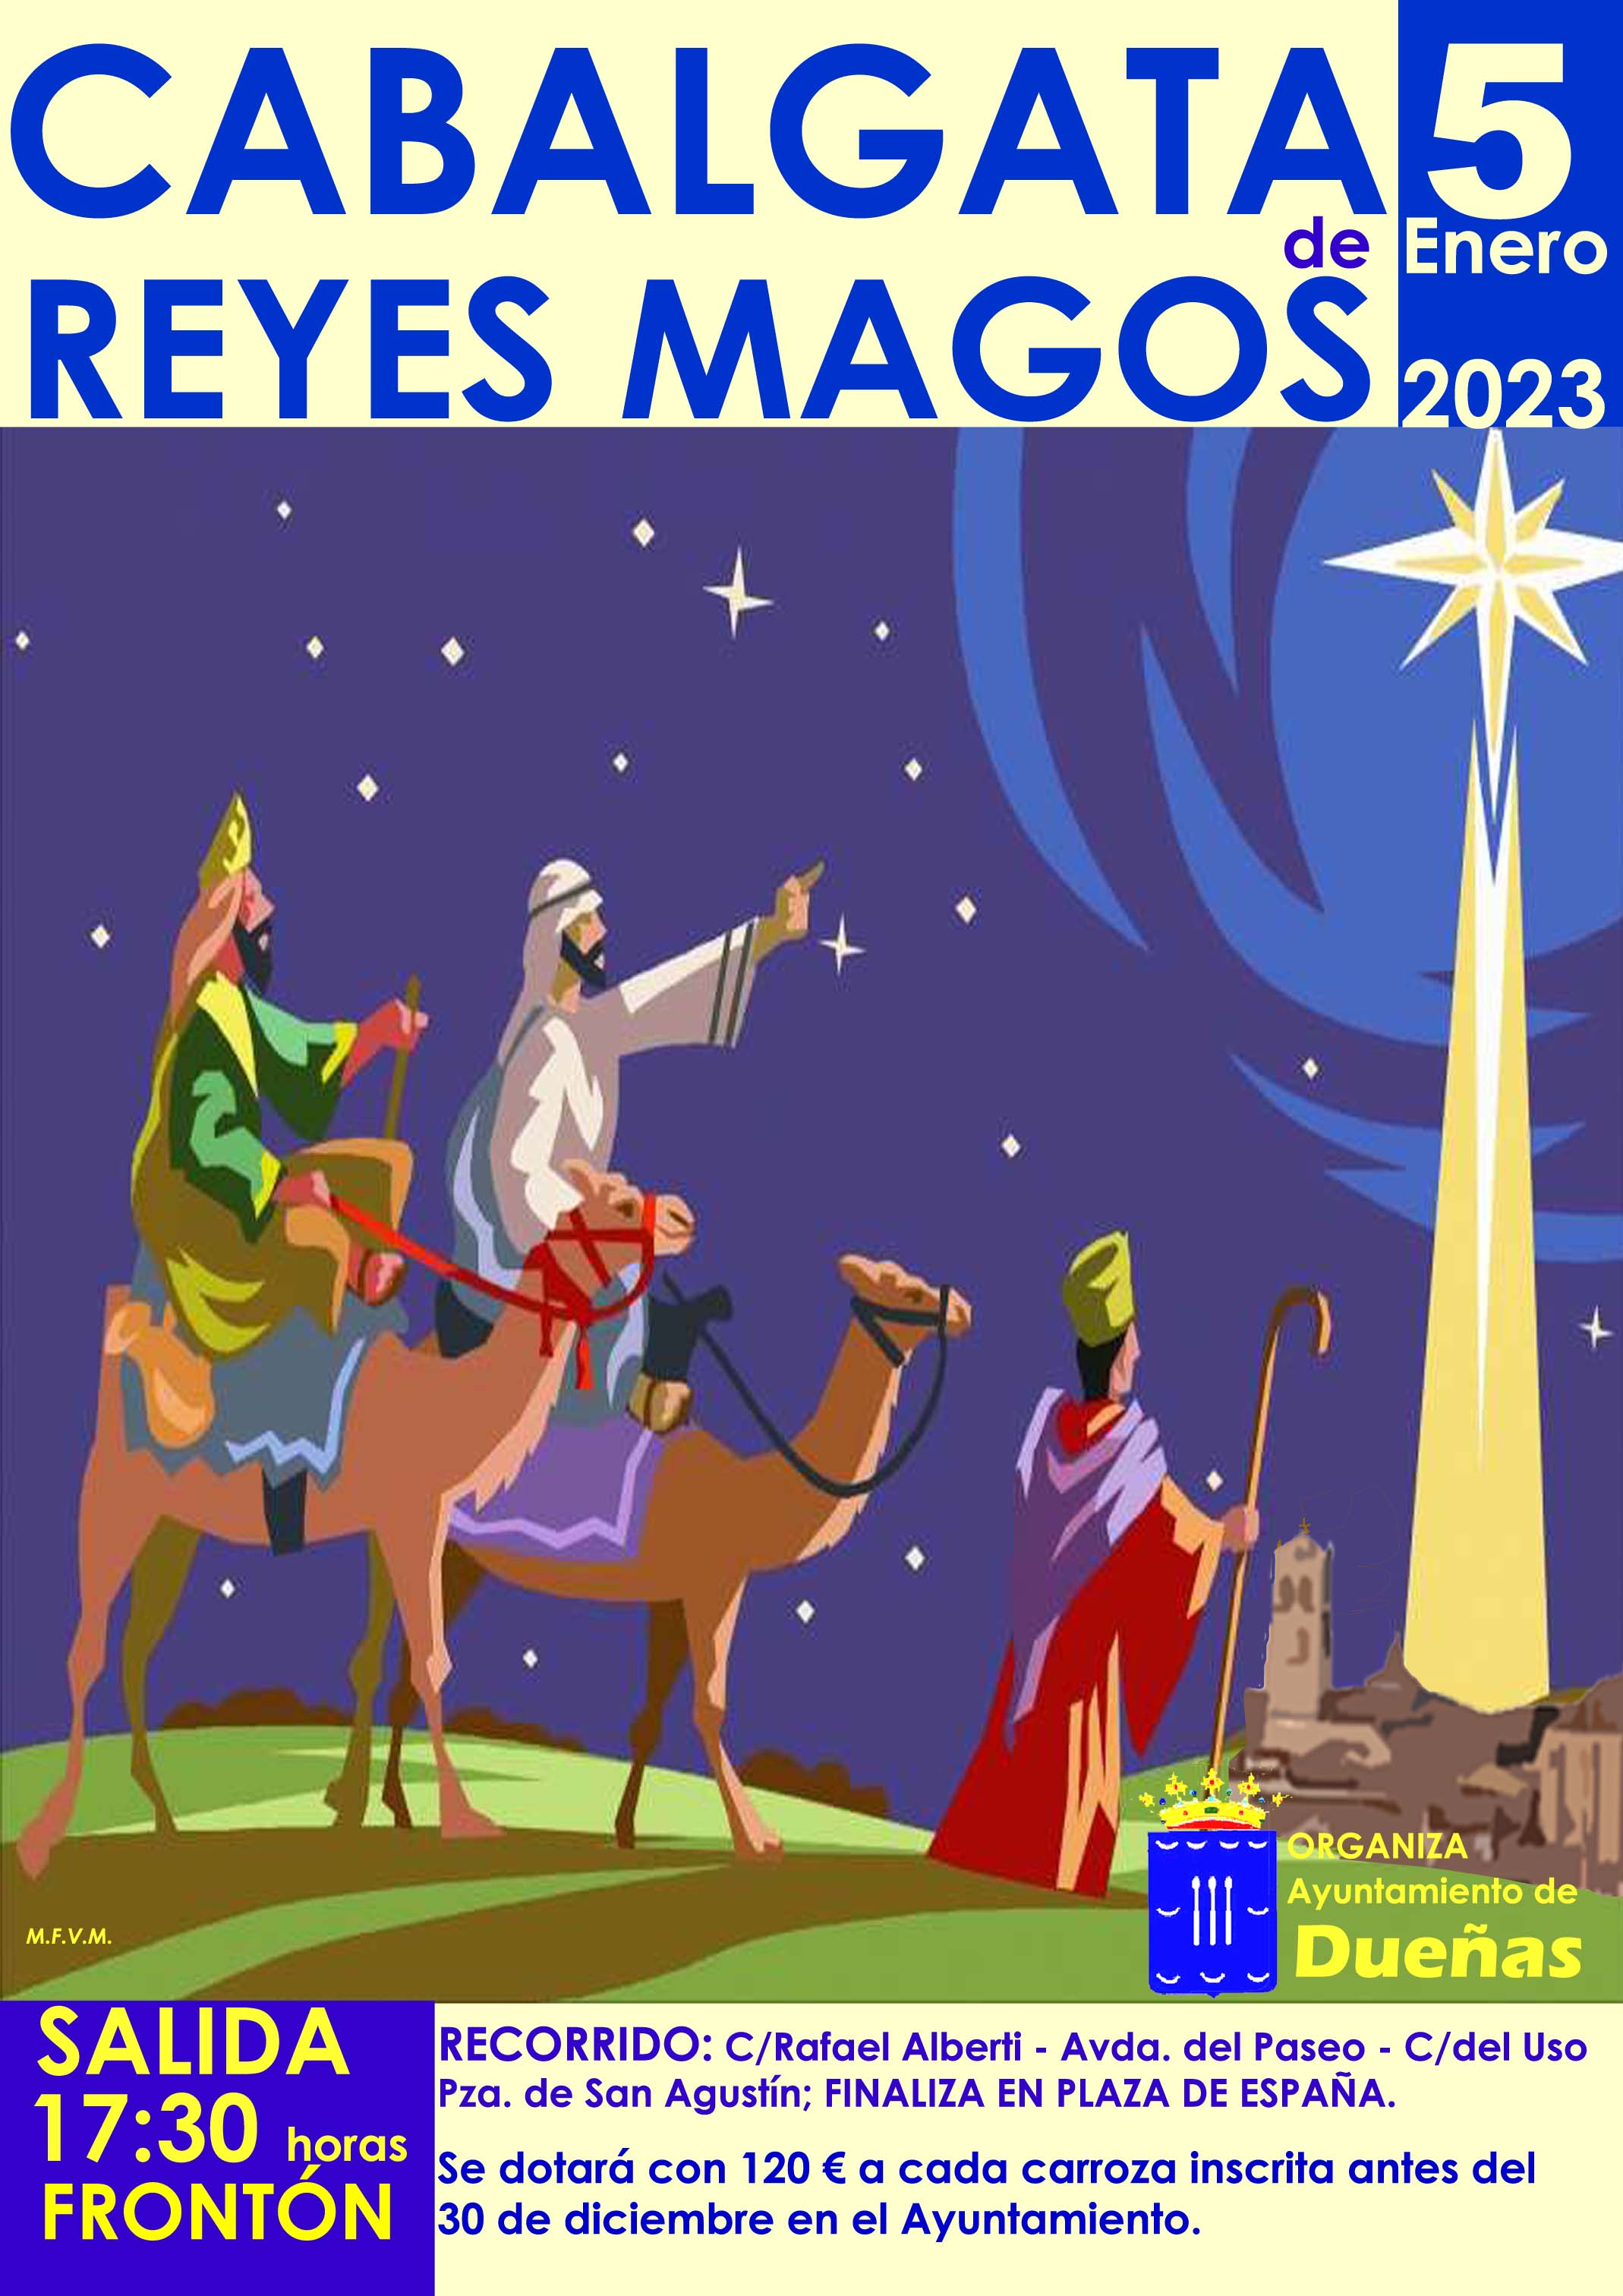 5 de enero: Cabalgata de Reyes en Dueñas